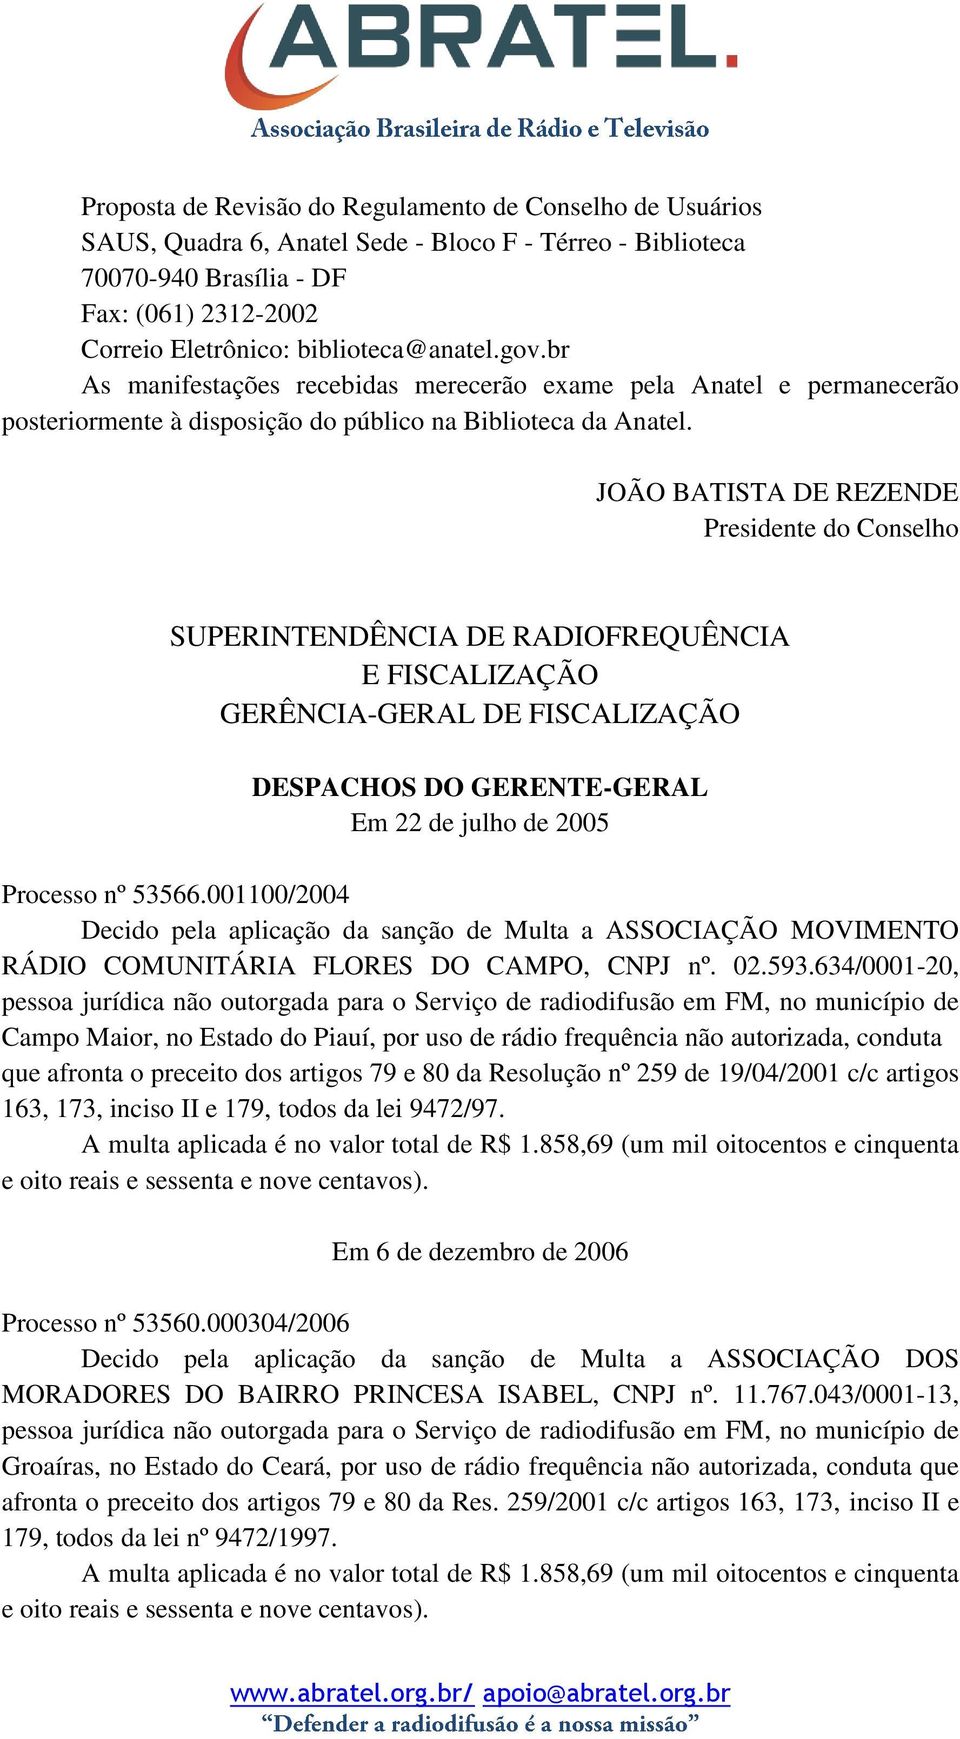 JOÃO BATISTA DE REZENDE Presidente do Conselho SUPERINTENDÊNCIA DE RADIOFREQUÊNCIA E FISCALIZAÇÃO GERÊNCIA-GERAL DE FISCALIZAÇÃO DESPACHOS DO GERENTE-GERAL Em 22 de julho de 2005 Processo nº 53566.